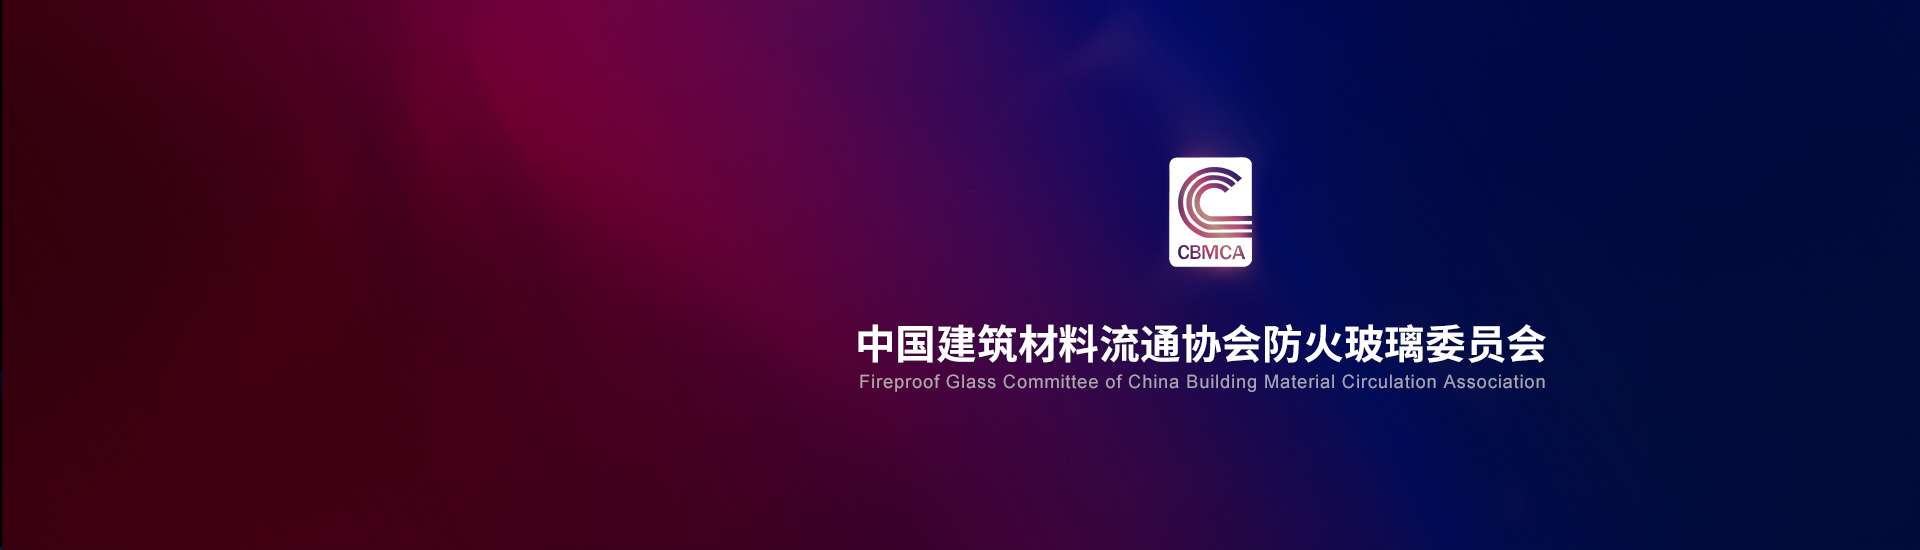 中国建筑材料流通协会防火玻璃委员会